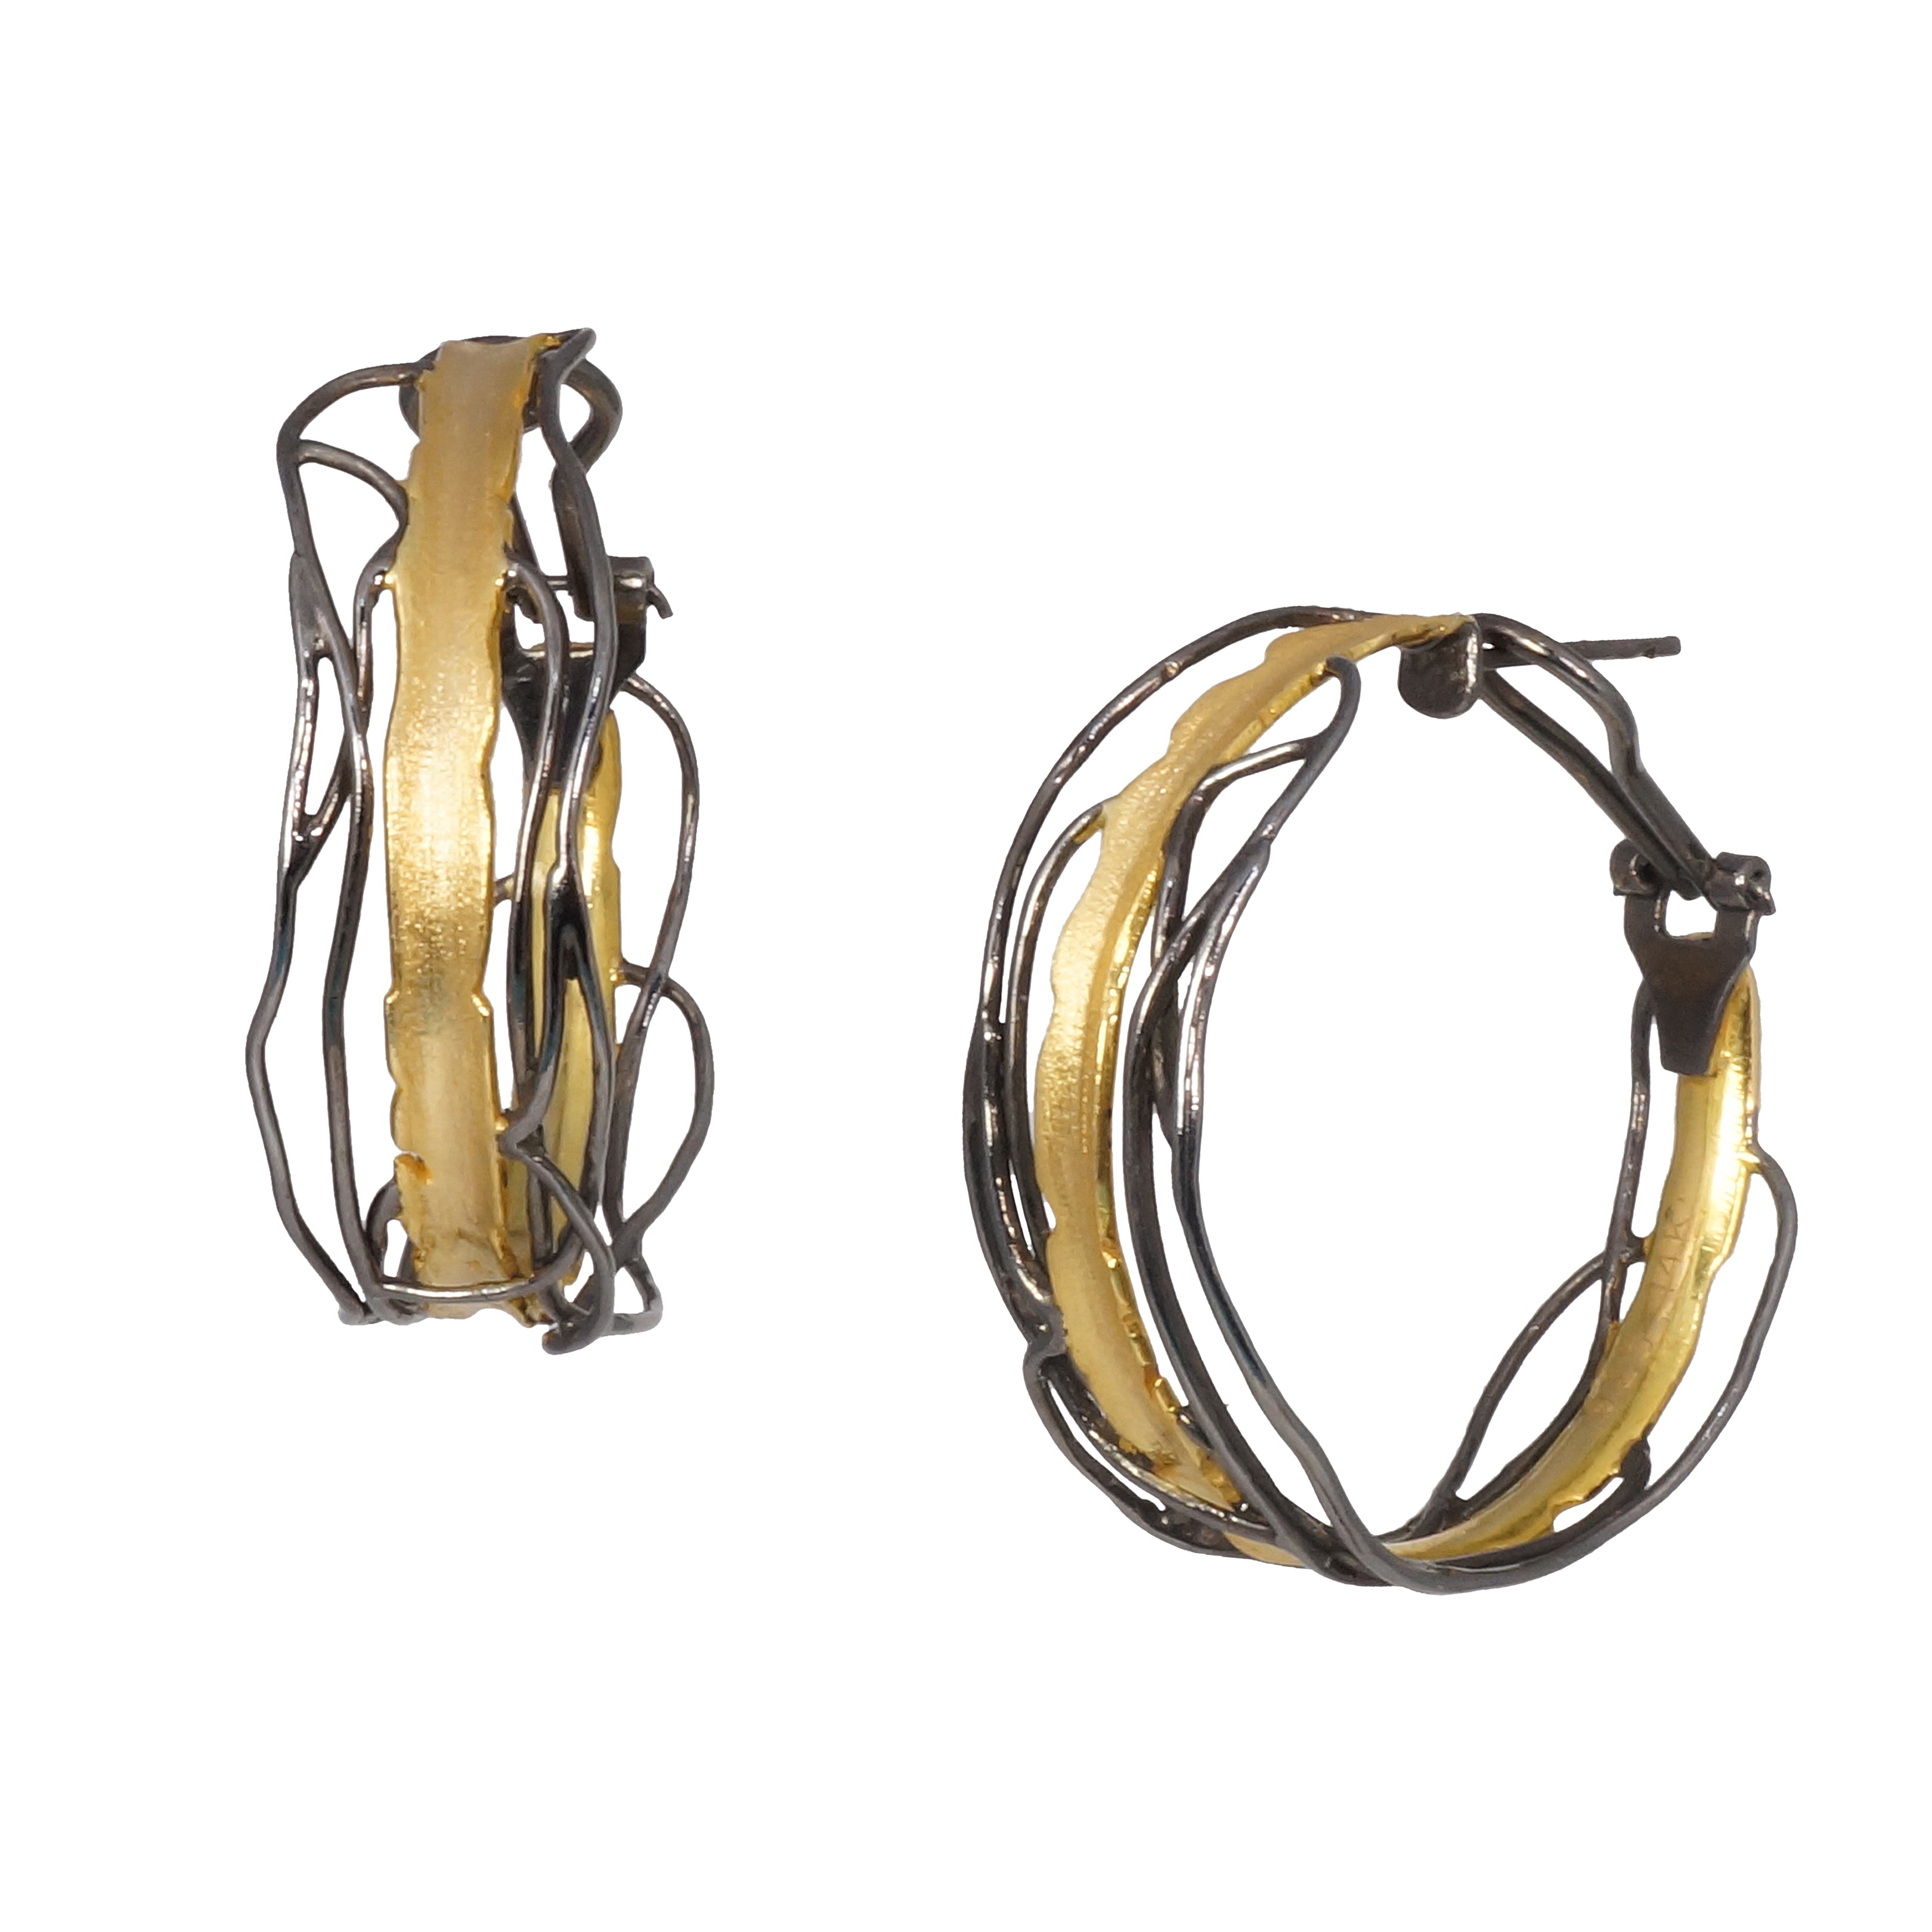 14k Gold Post Earrings - Omega Clip Earrings - Q Evon Fine Jewelry